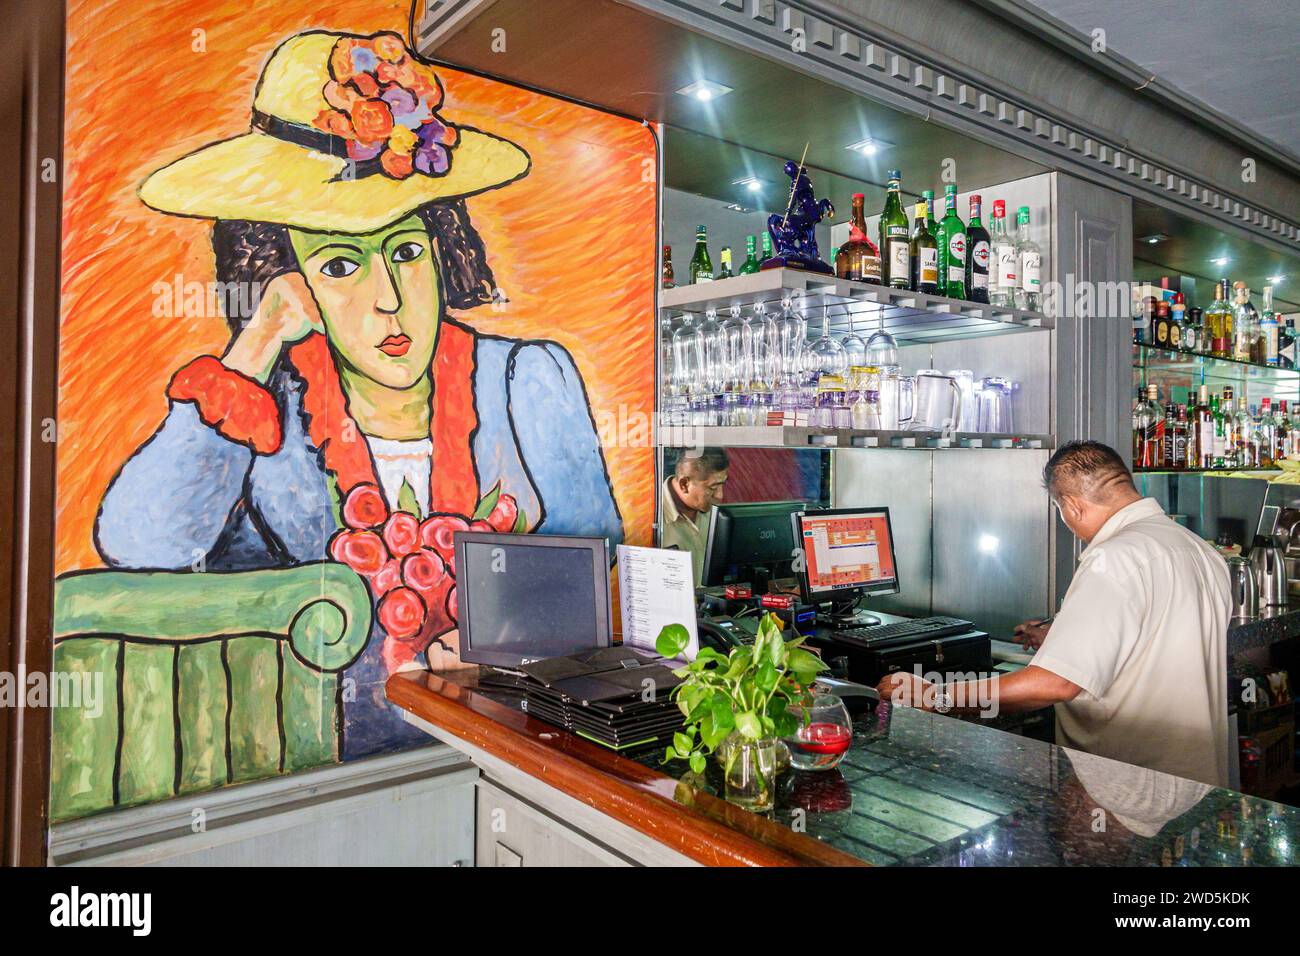 Merida Mexico, centro storico, bar pub, poster per pittura Alexej Von Jawlensky, espressionismo dell'artista, interni interni, baristi Foto Stock